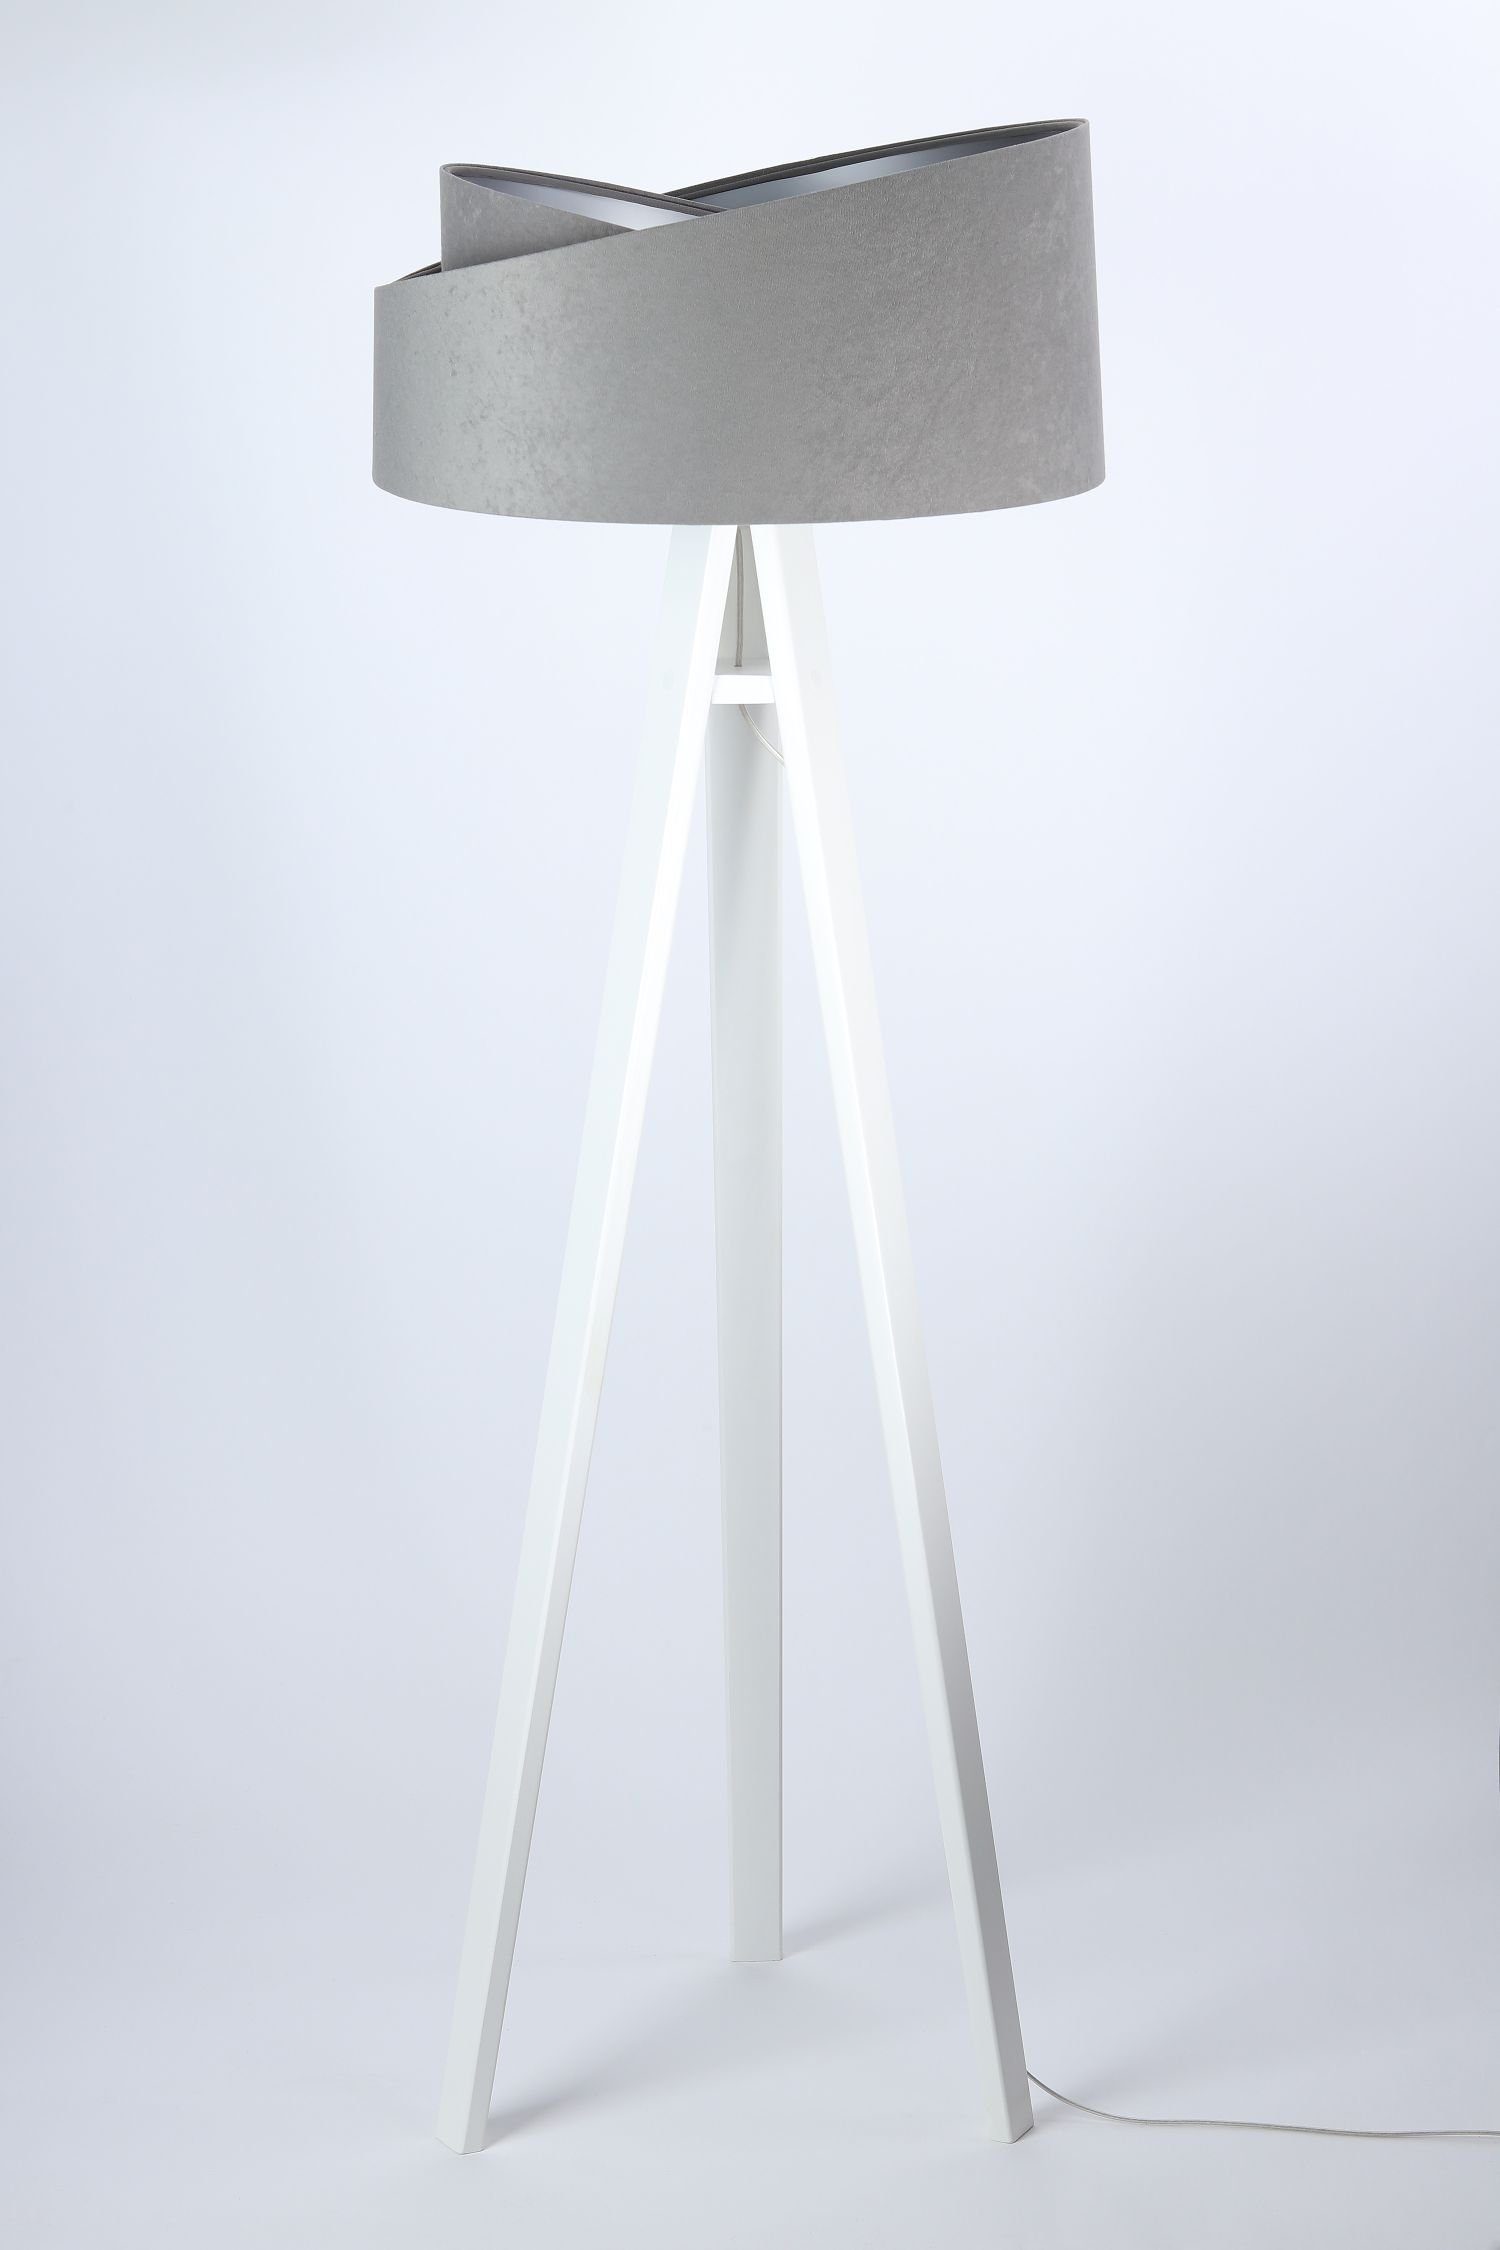 Licht-Erlebnisse Stehlampe EFIE, ohne Leuchtmittel, Dreibein Stehleuchte Grau Silber Weiß klein modern Wohnzimmer Lampe